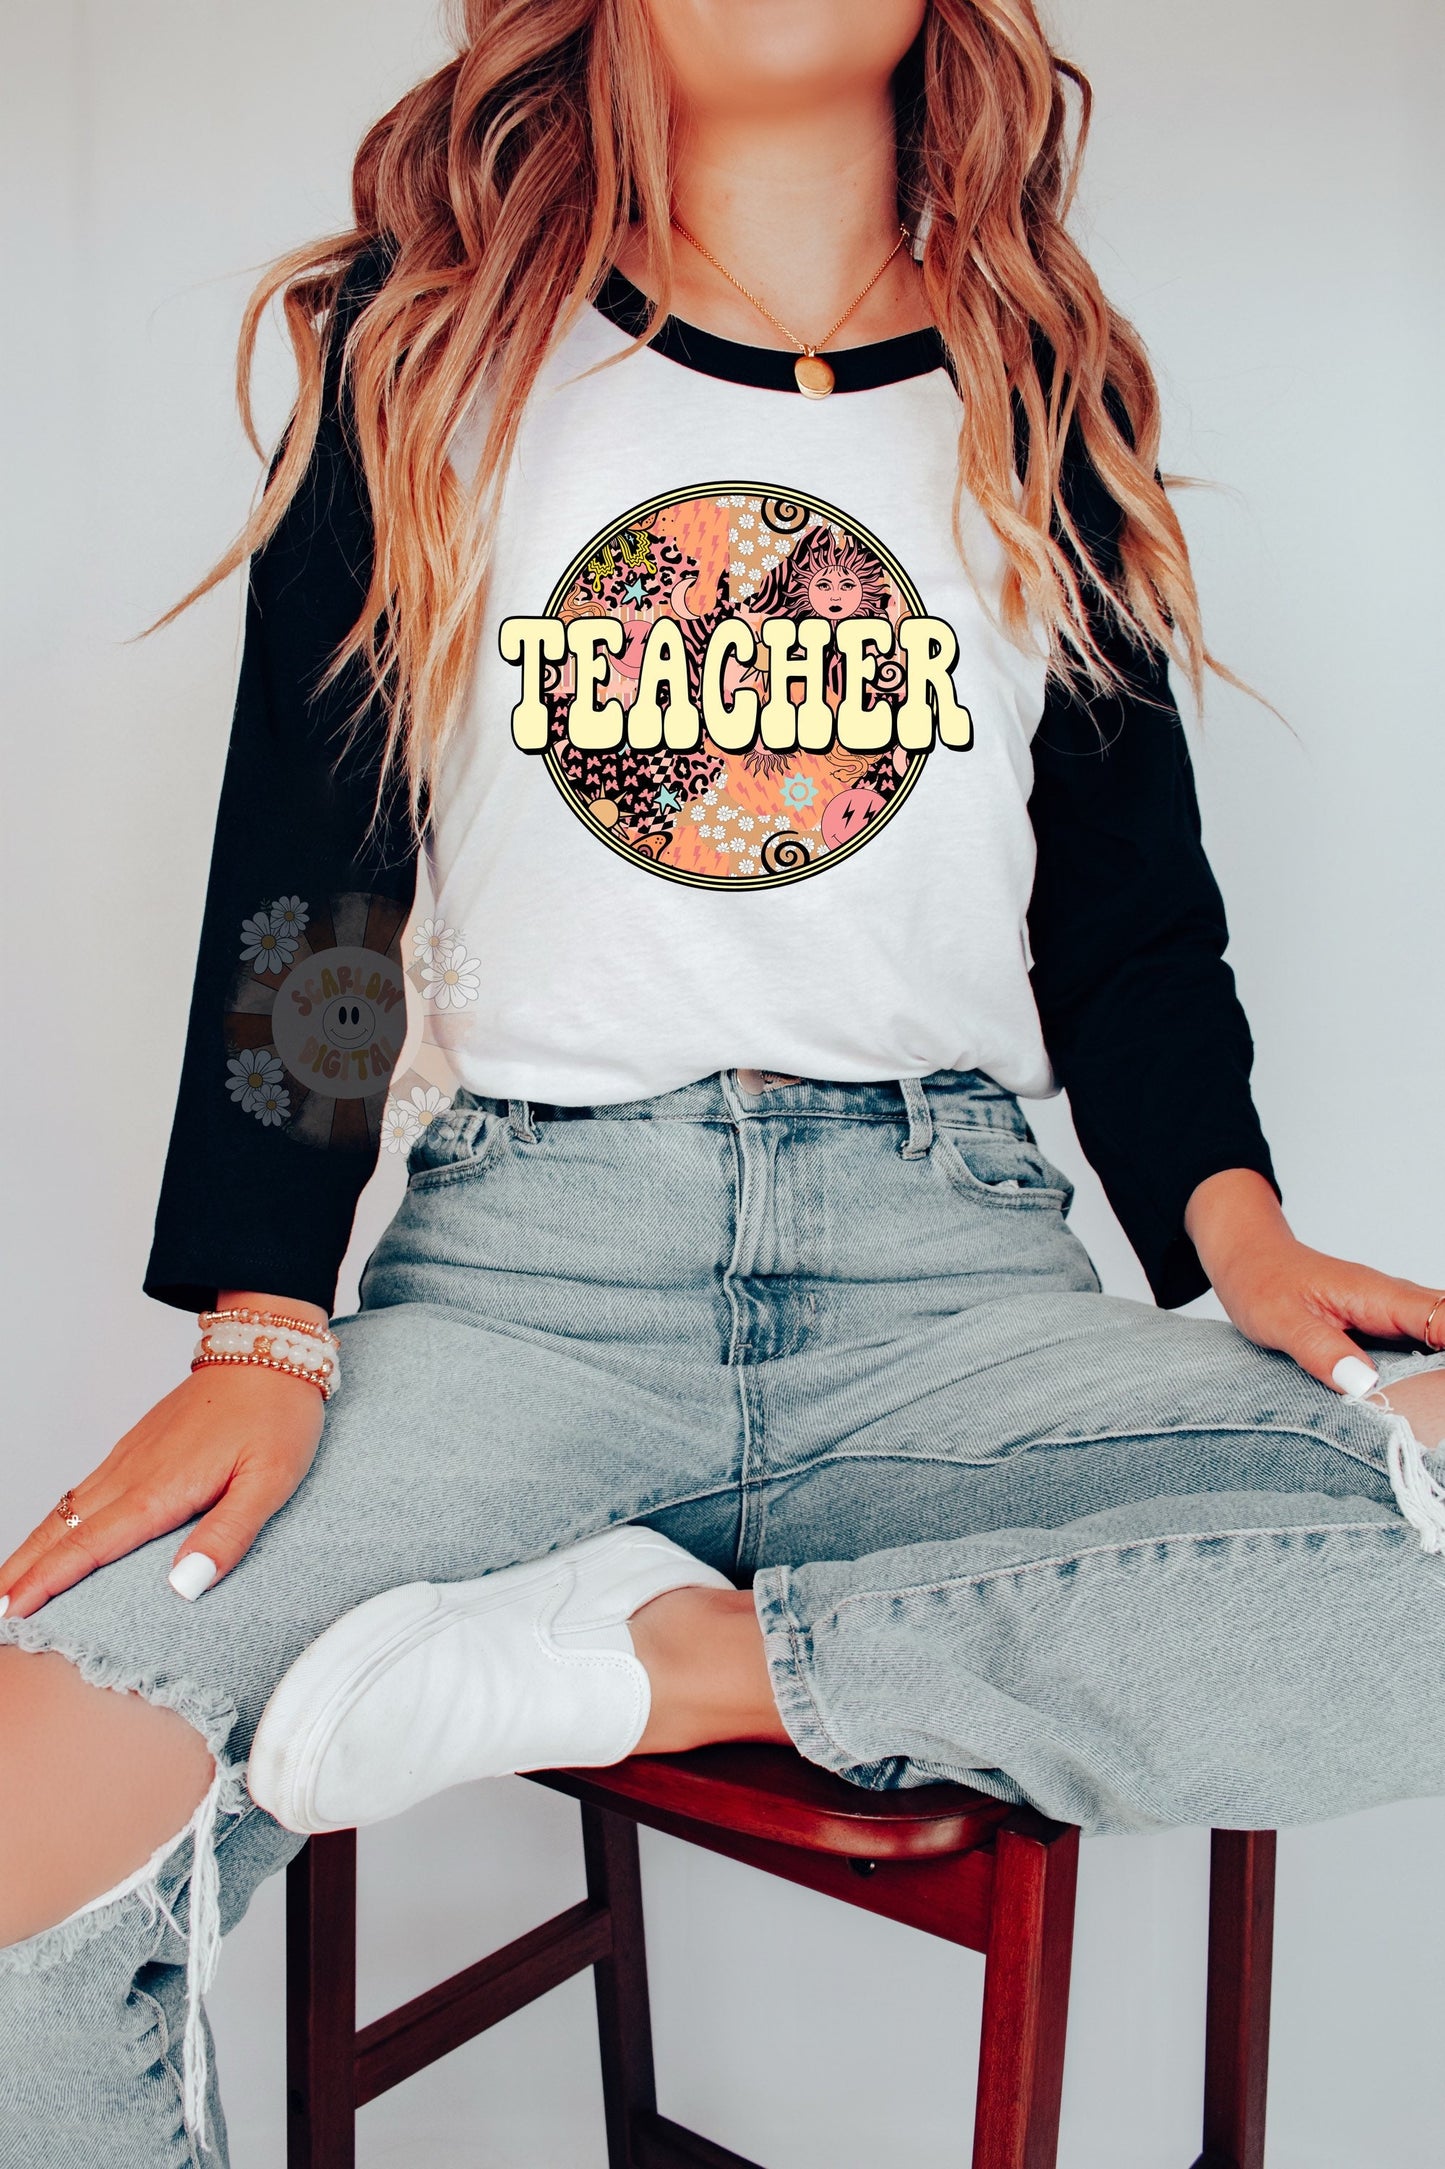 Teacher PNG-Back to School Sublimation Digital Design Download-educator png, boho teacher png, hippie teacher png, floral teacher png design